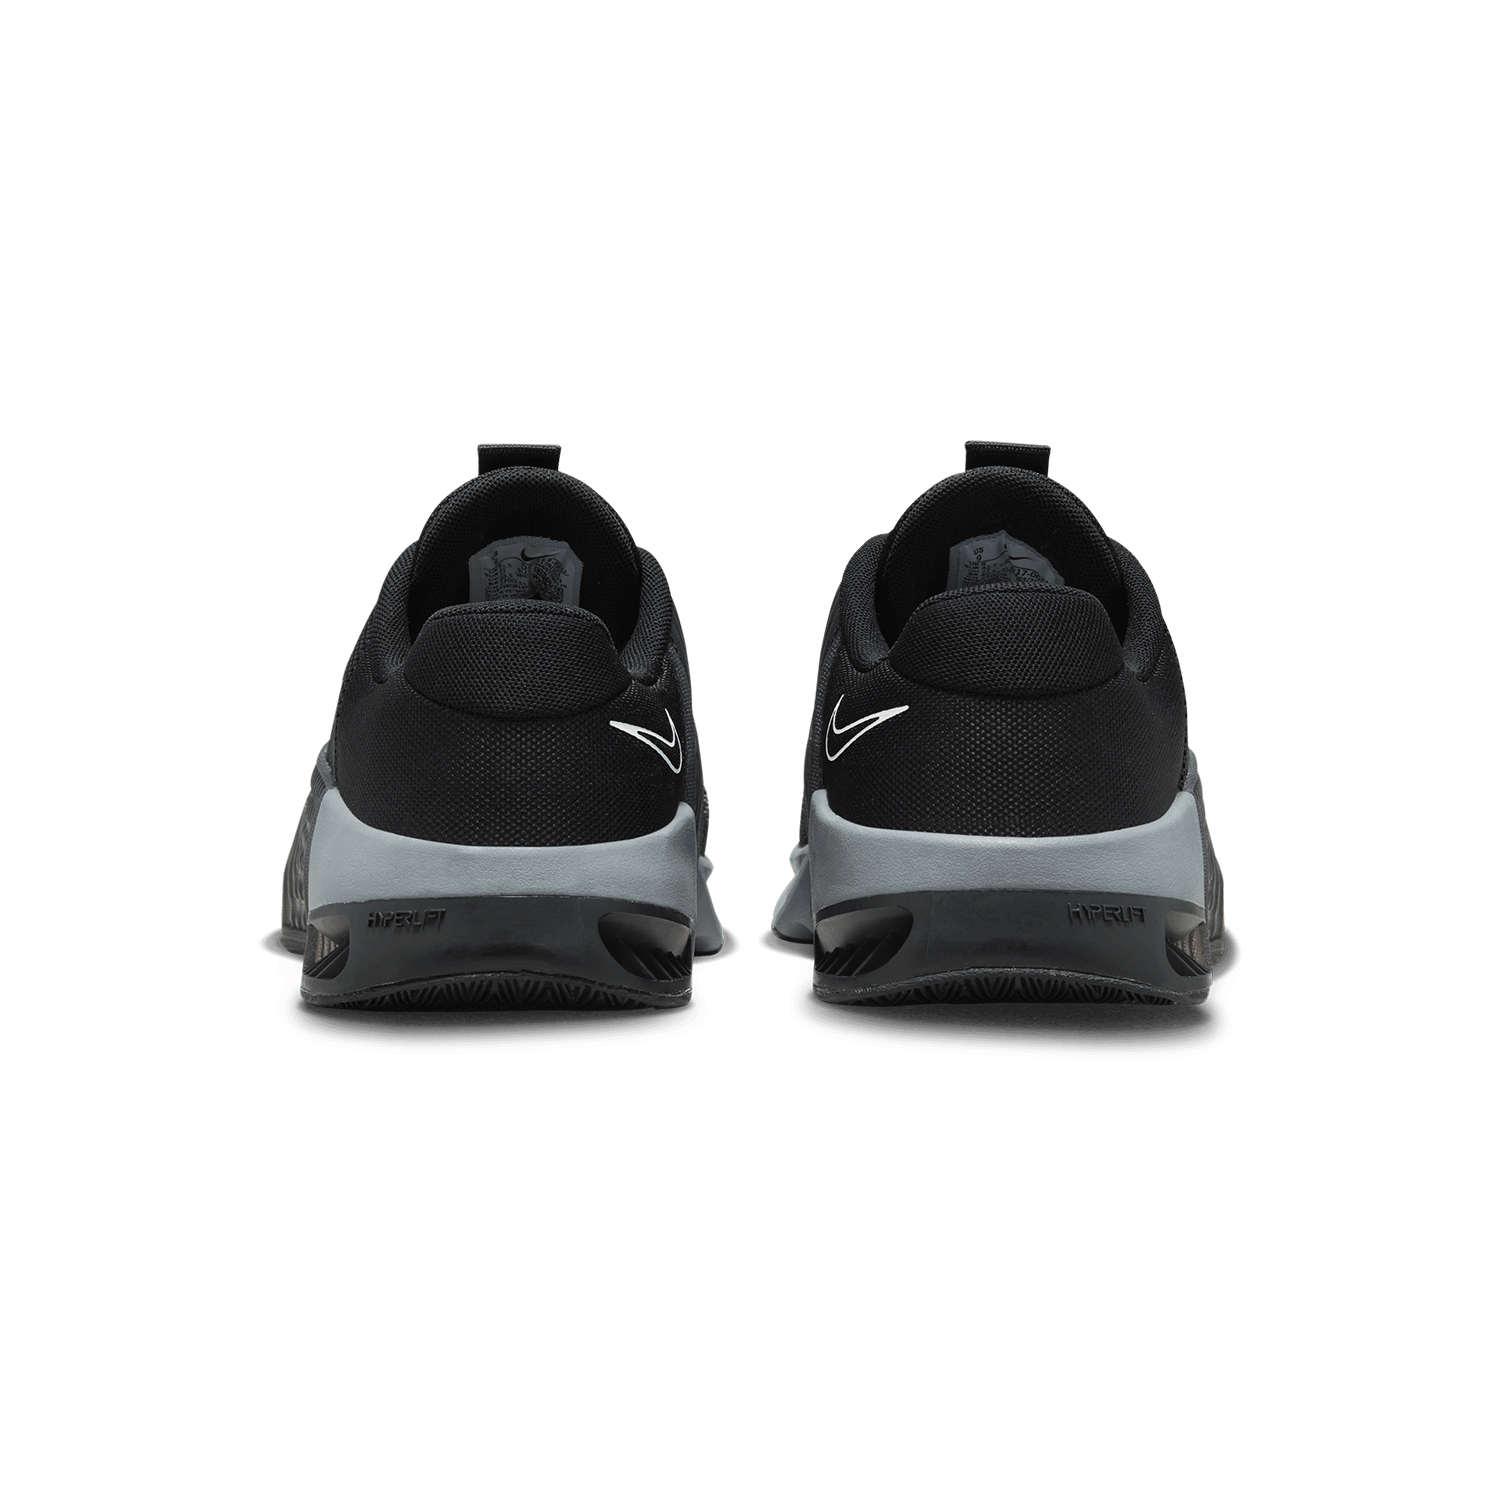 Nike Metcon 9 - Black/White/Anthracite/Smoke Grey